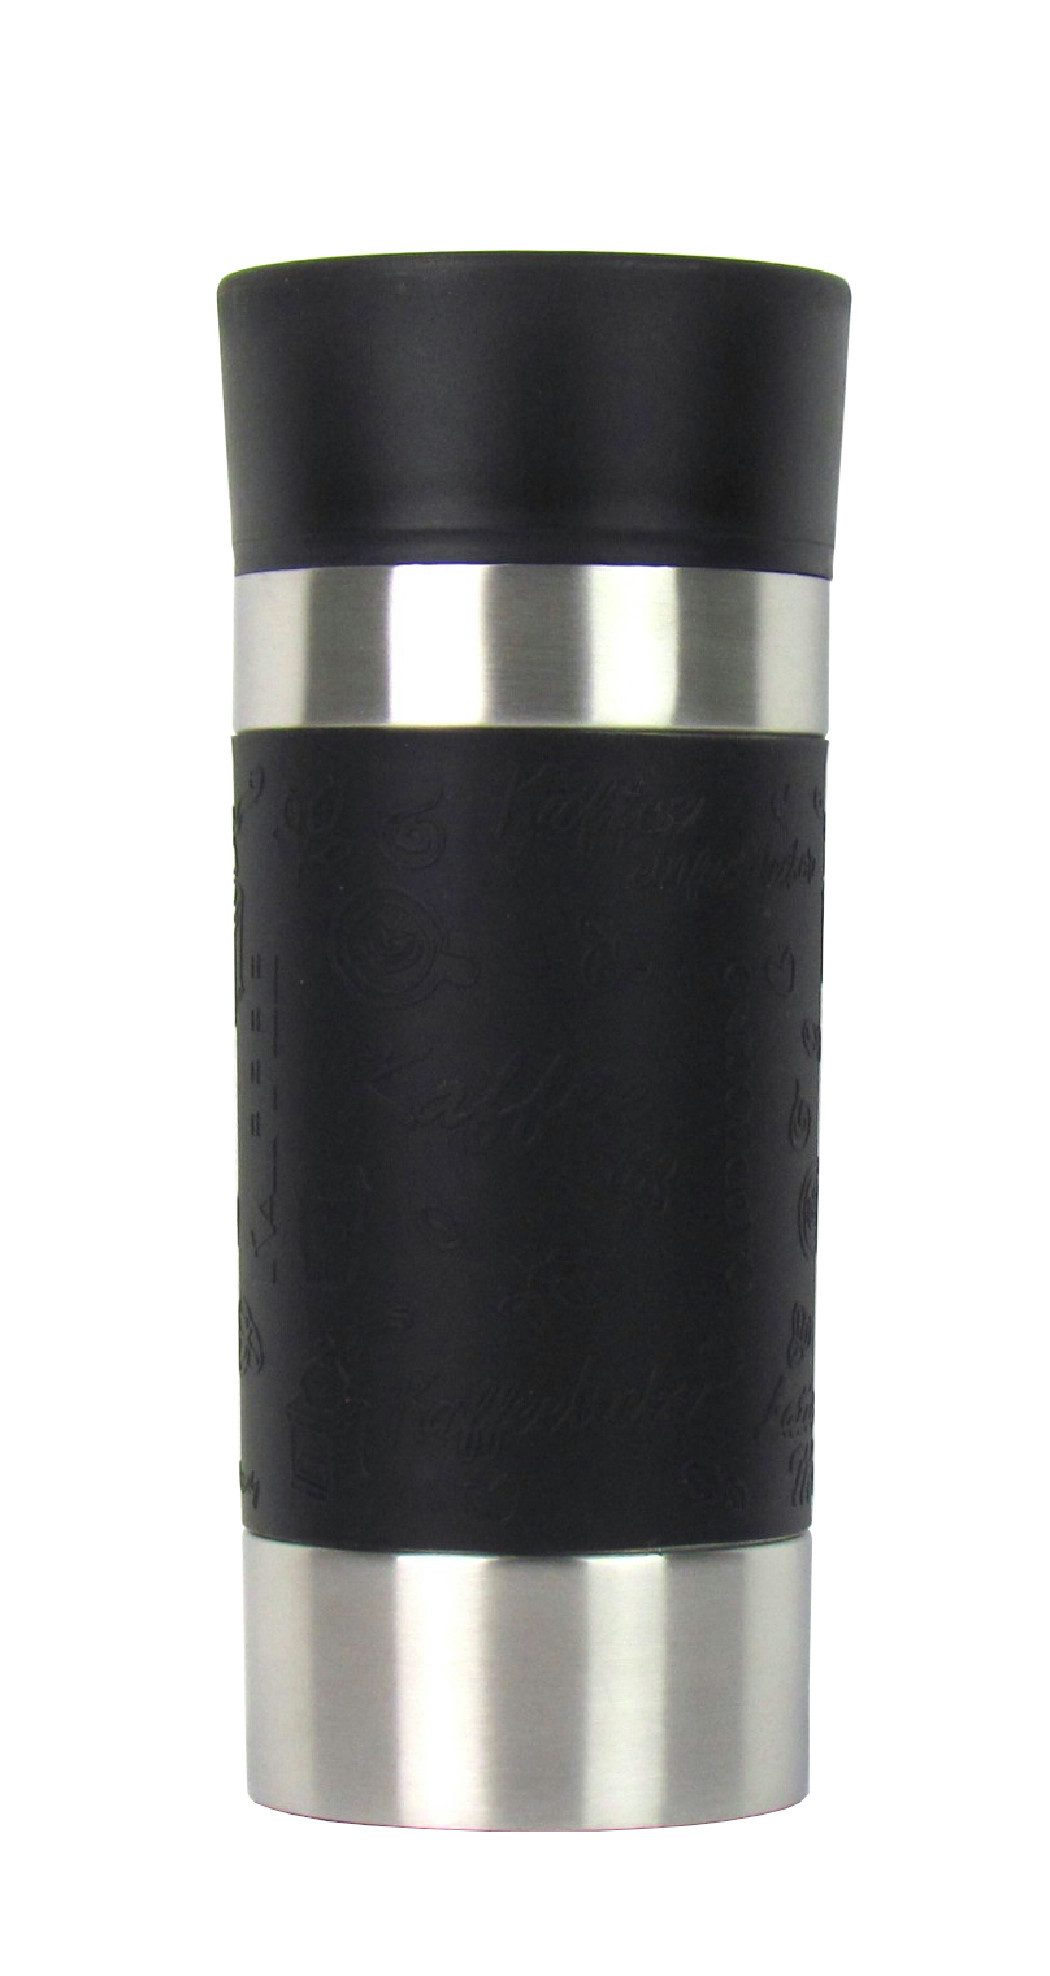 Haushalt International Thermoflasche Isolierbecher – Thermobecher, Fassungsvermögen 360ml – Doppelwandig mit Quick-Press Verschluss